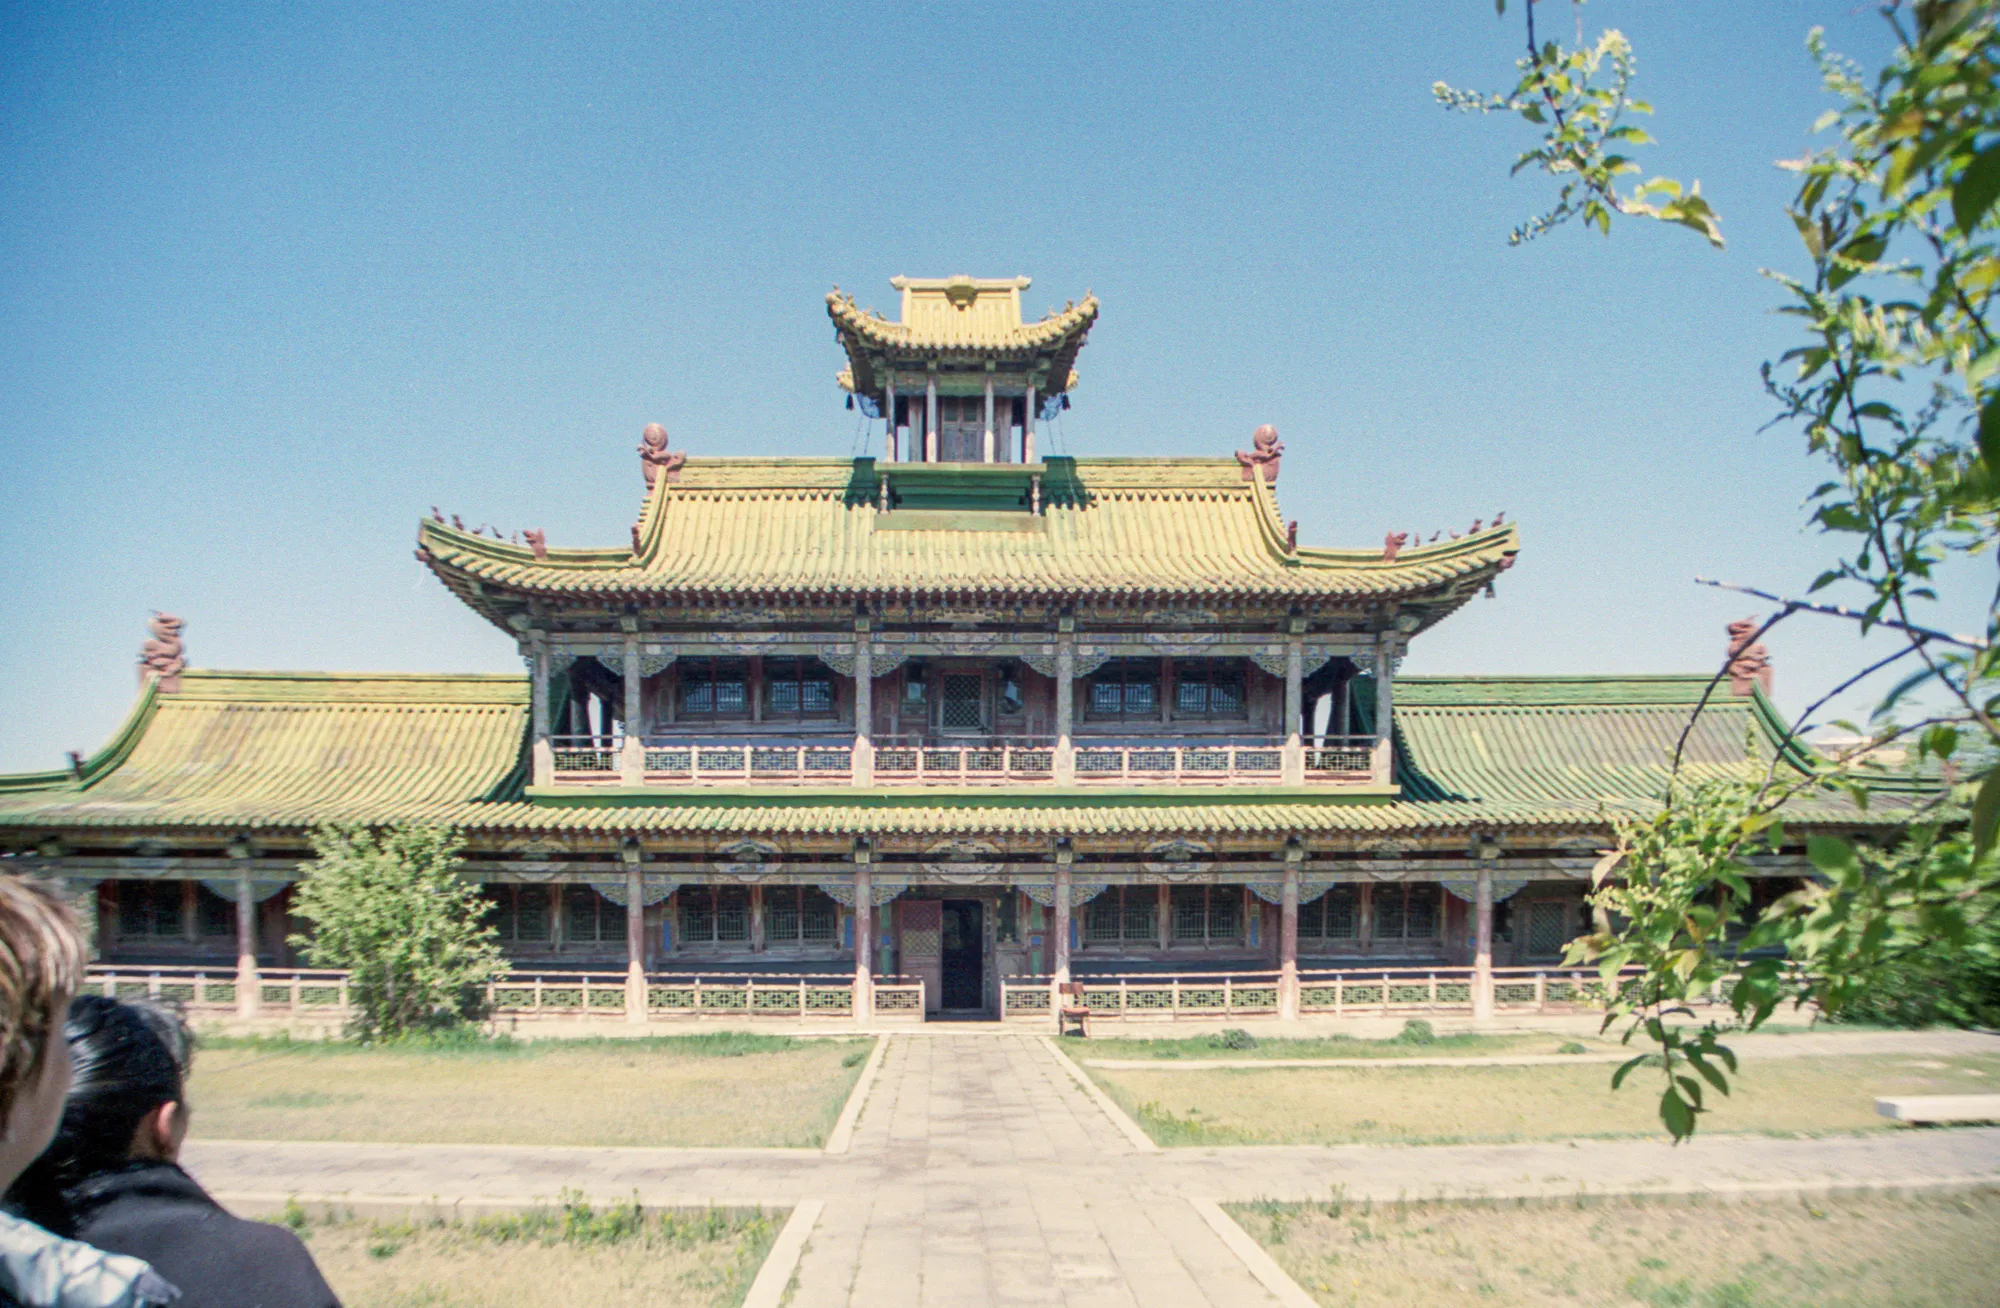 Main Hall of the Bogd Khan Palace